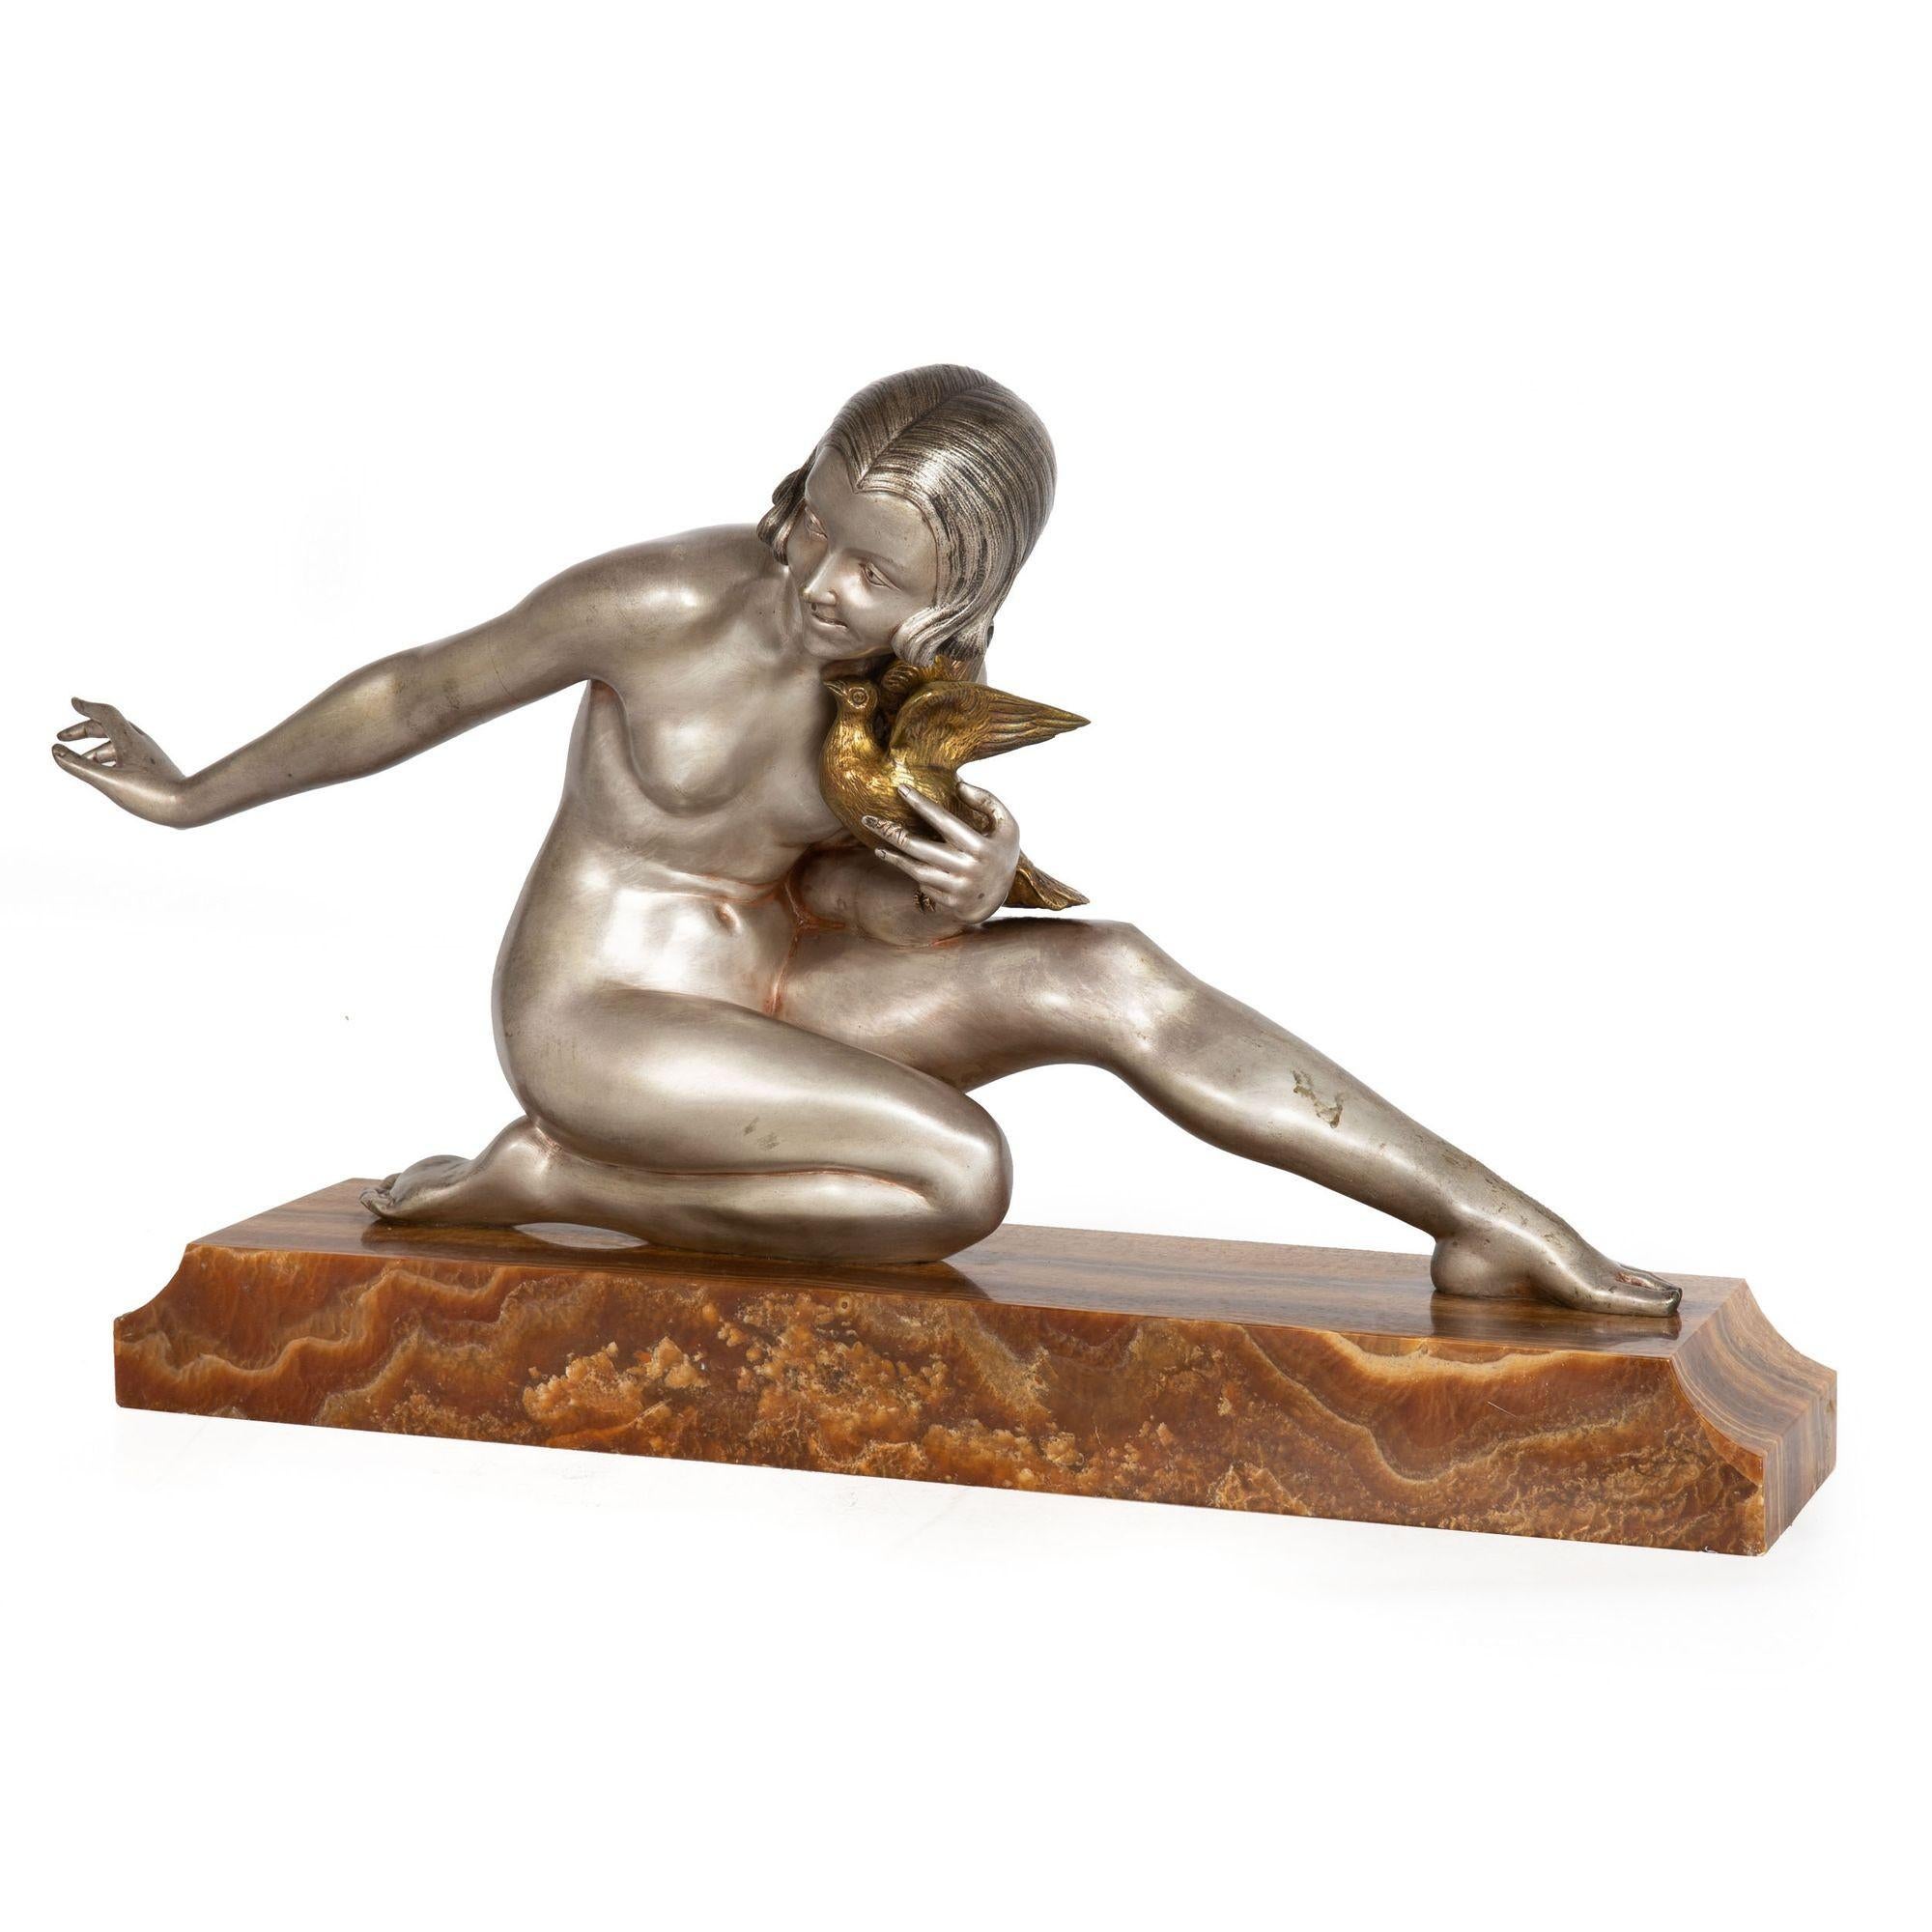 ARMAND GODARD
Französisch, ca. 1920er Jahre

Sitzende Frau hält einen Vogel

Silber patinierte Bronze auf einem Sockel aus prähistorischem versteinertem Holz  auf dem Sockel eingraviert GODARD

Artikel Nr. 303XAF30W 

Ein exquisit gegossenes